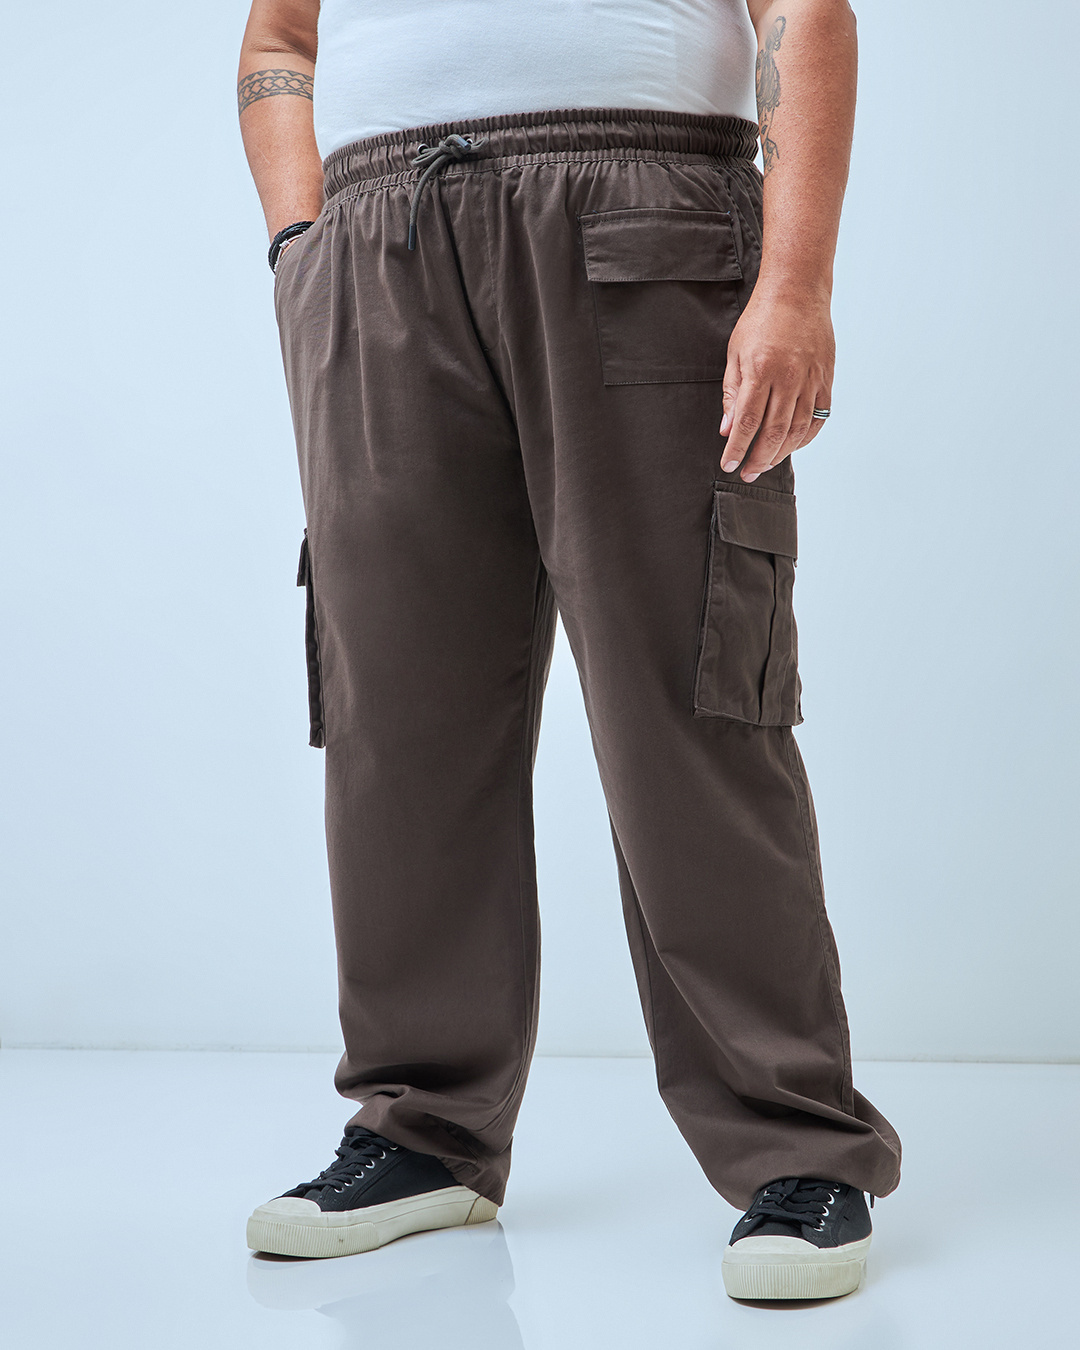 Buy Men's Brown Oversized Plus Size Cargo Pants Online at Bewakoof